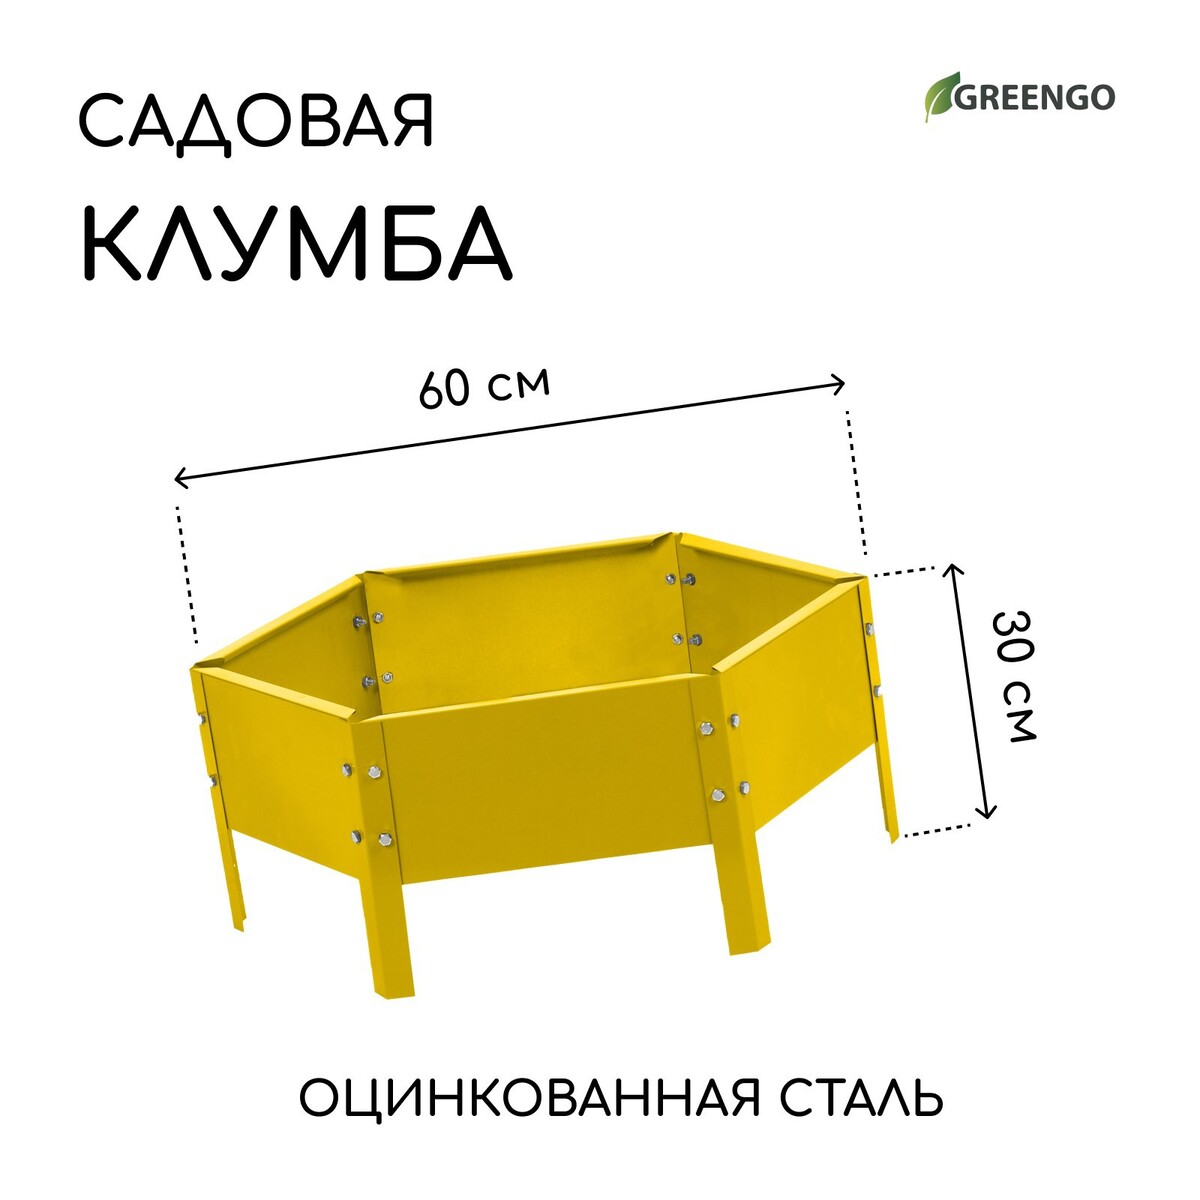 Клумба оцинкованная, d = 60 см, h = 15 см, желтая, greengo клумба оцинкованная d 80 см h 15 см оранжевая greengo